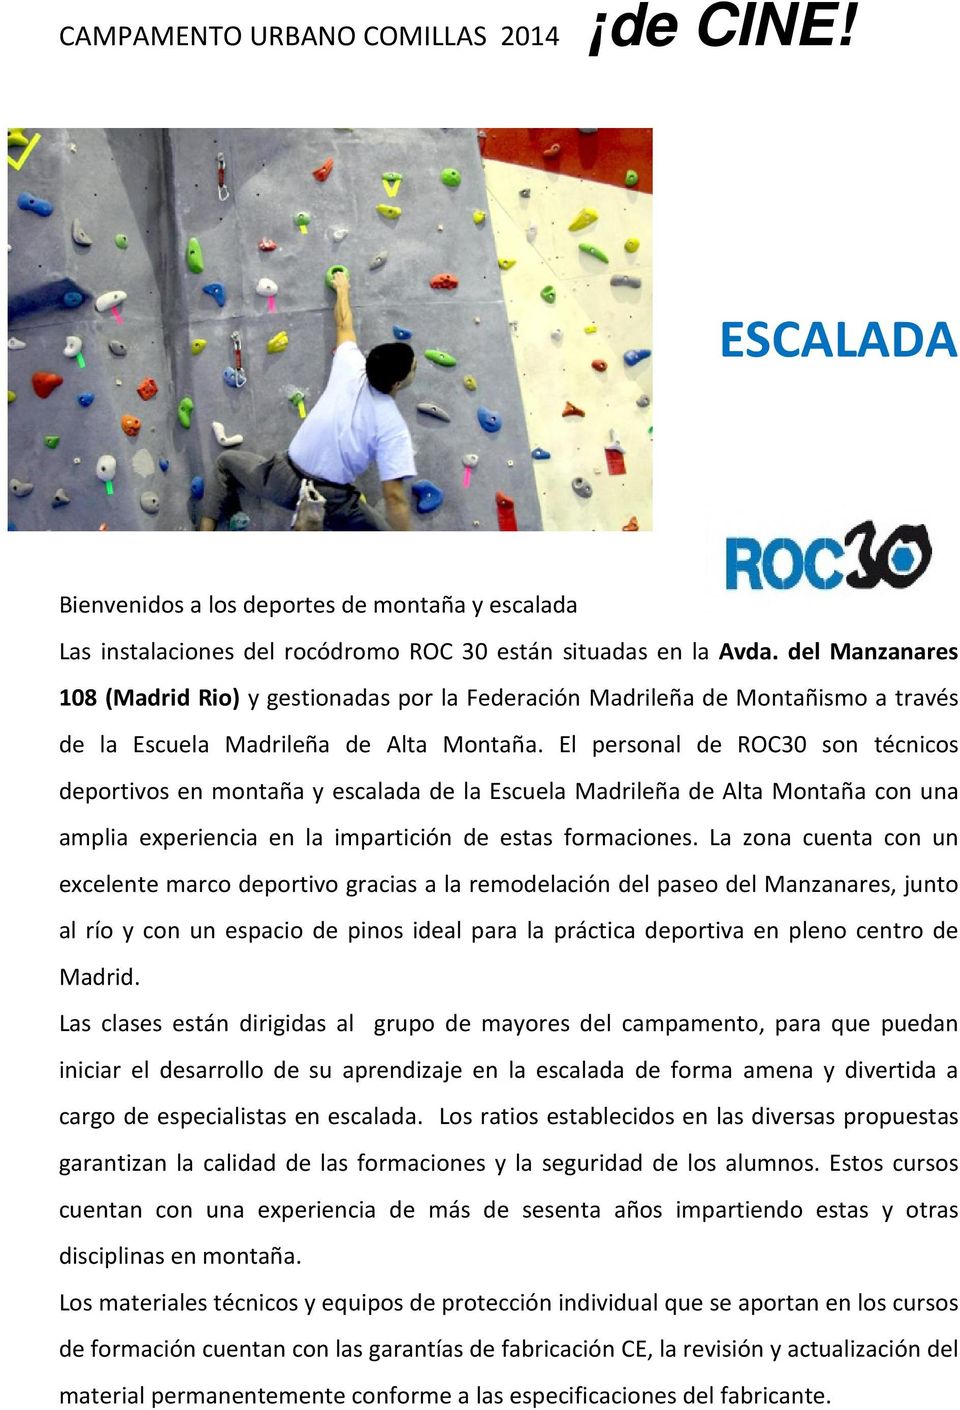 El personal de ROC30 son técnicos deportivos en montaña y escalada de la Escuela Madrileña de Alta Montaña con una amplia experiencia en la impartición de estas formaciones.